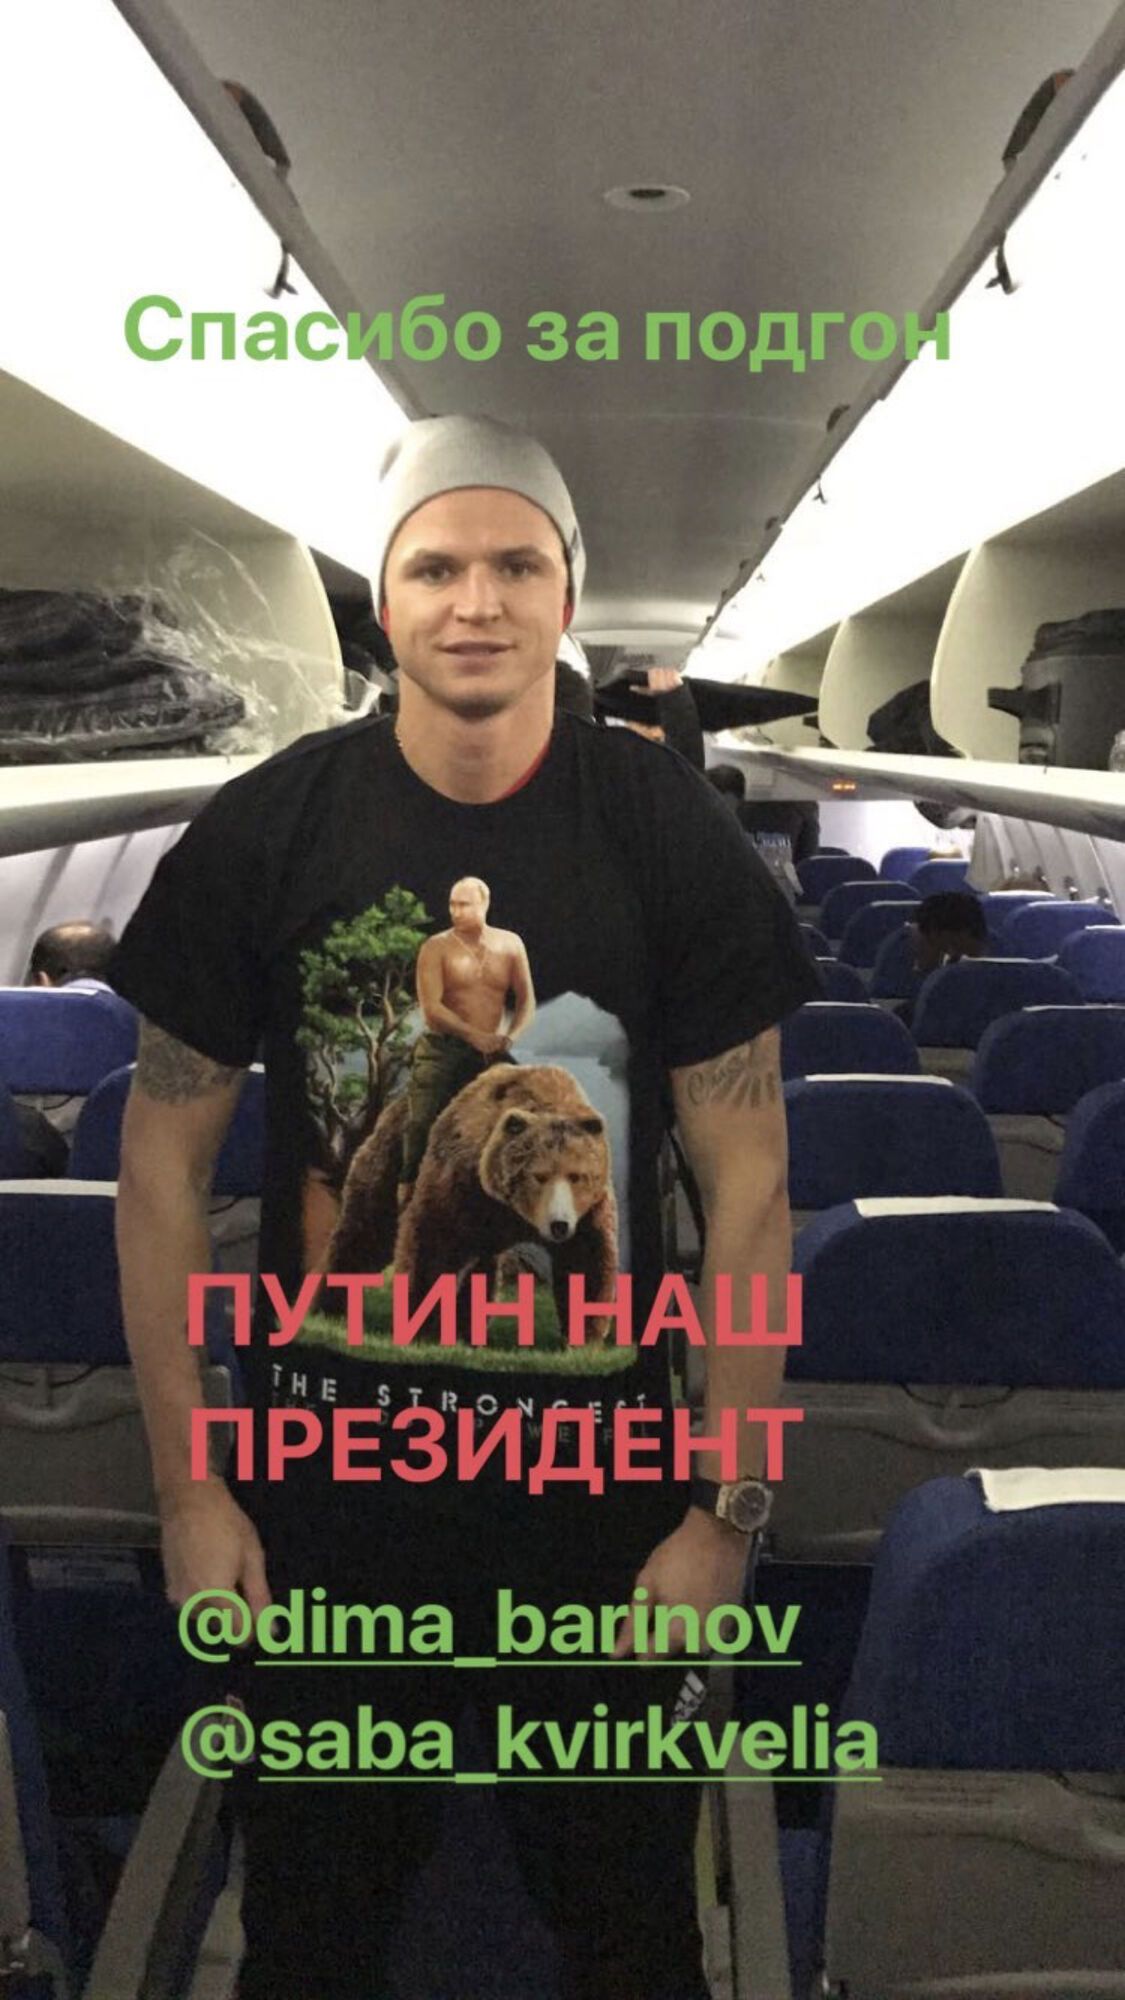 "Наш ідіот": футболіста збірної Росії зацькували за фото з портретом Путіна